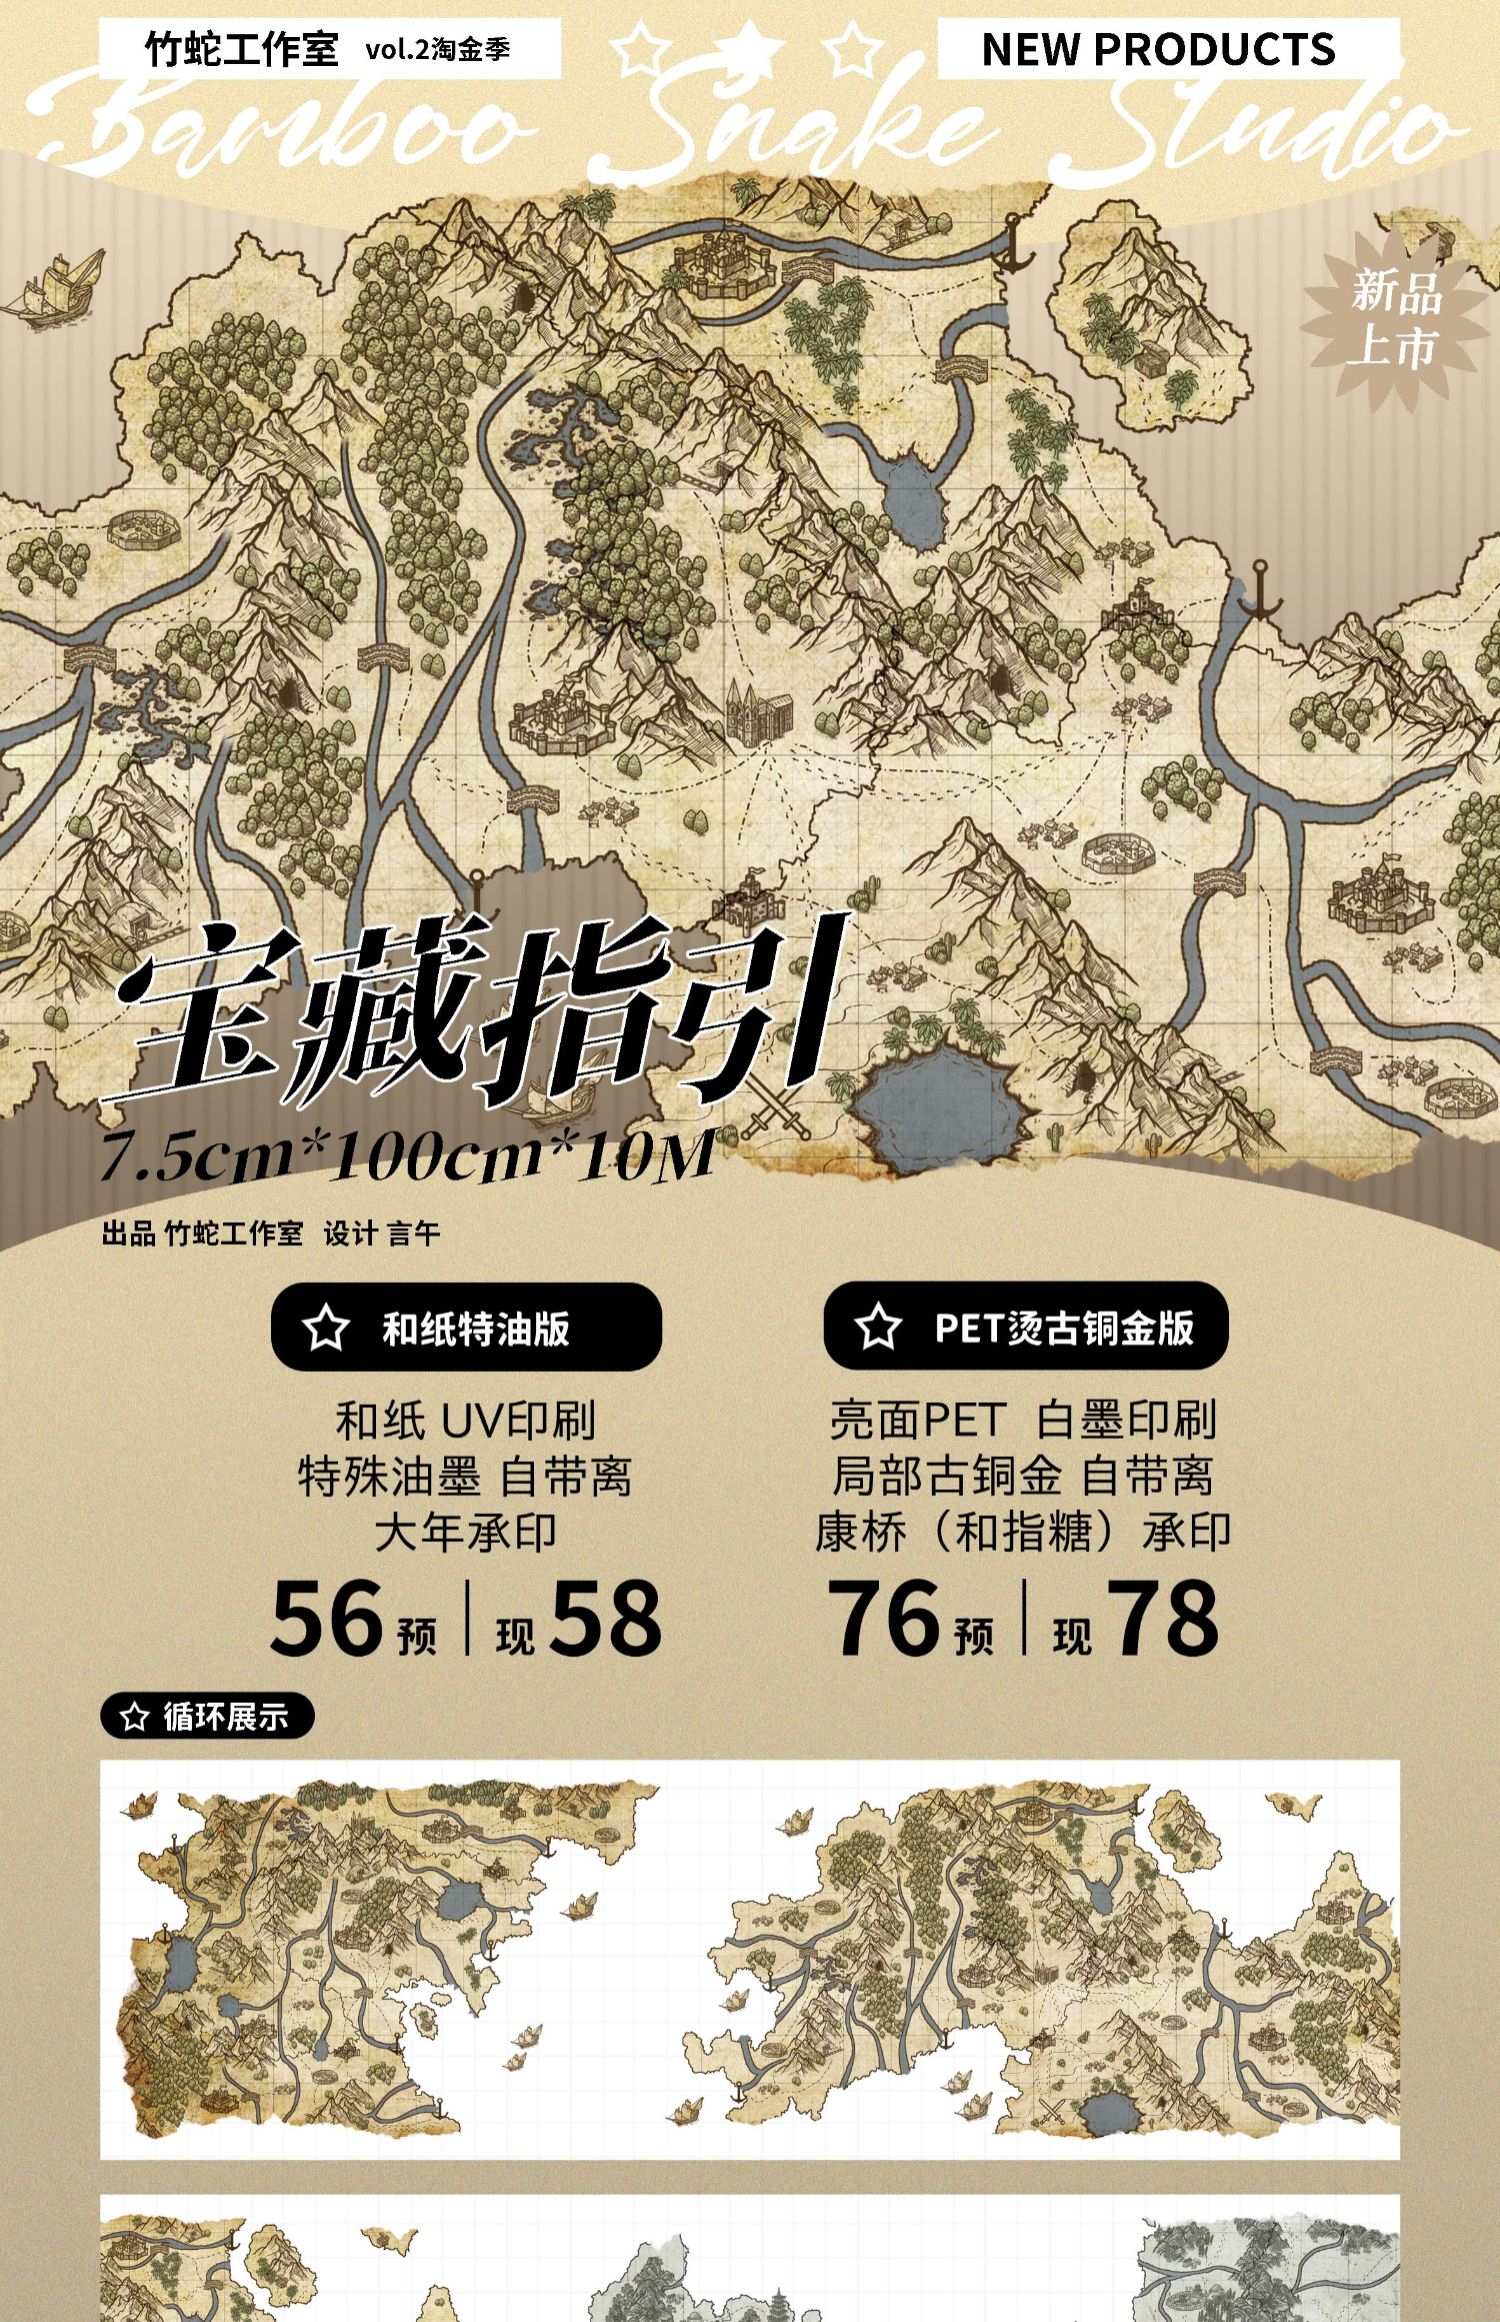 7.5cm Treasure Map theme Wshi&PET Tape